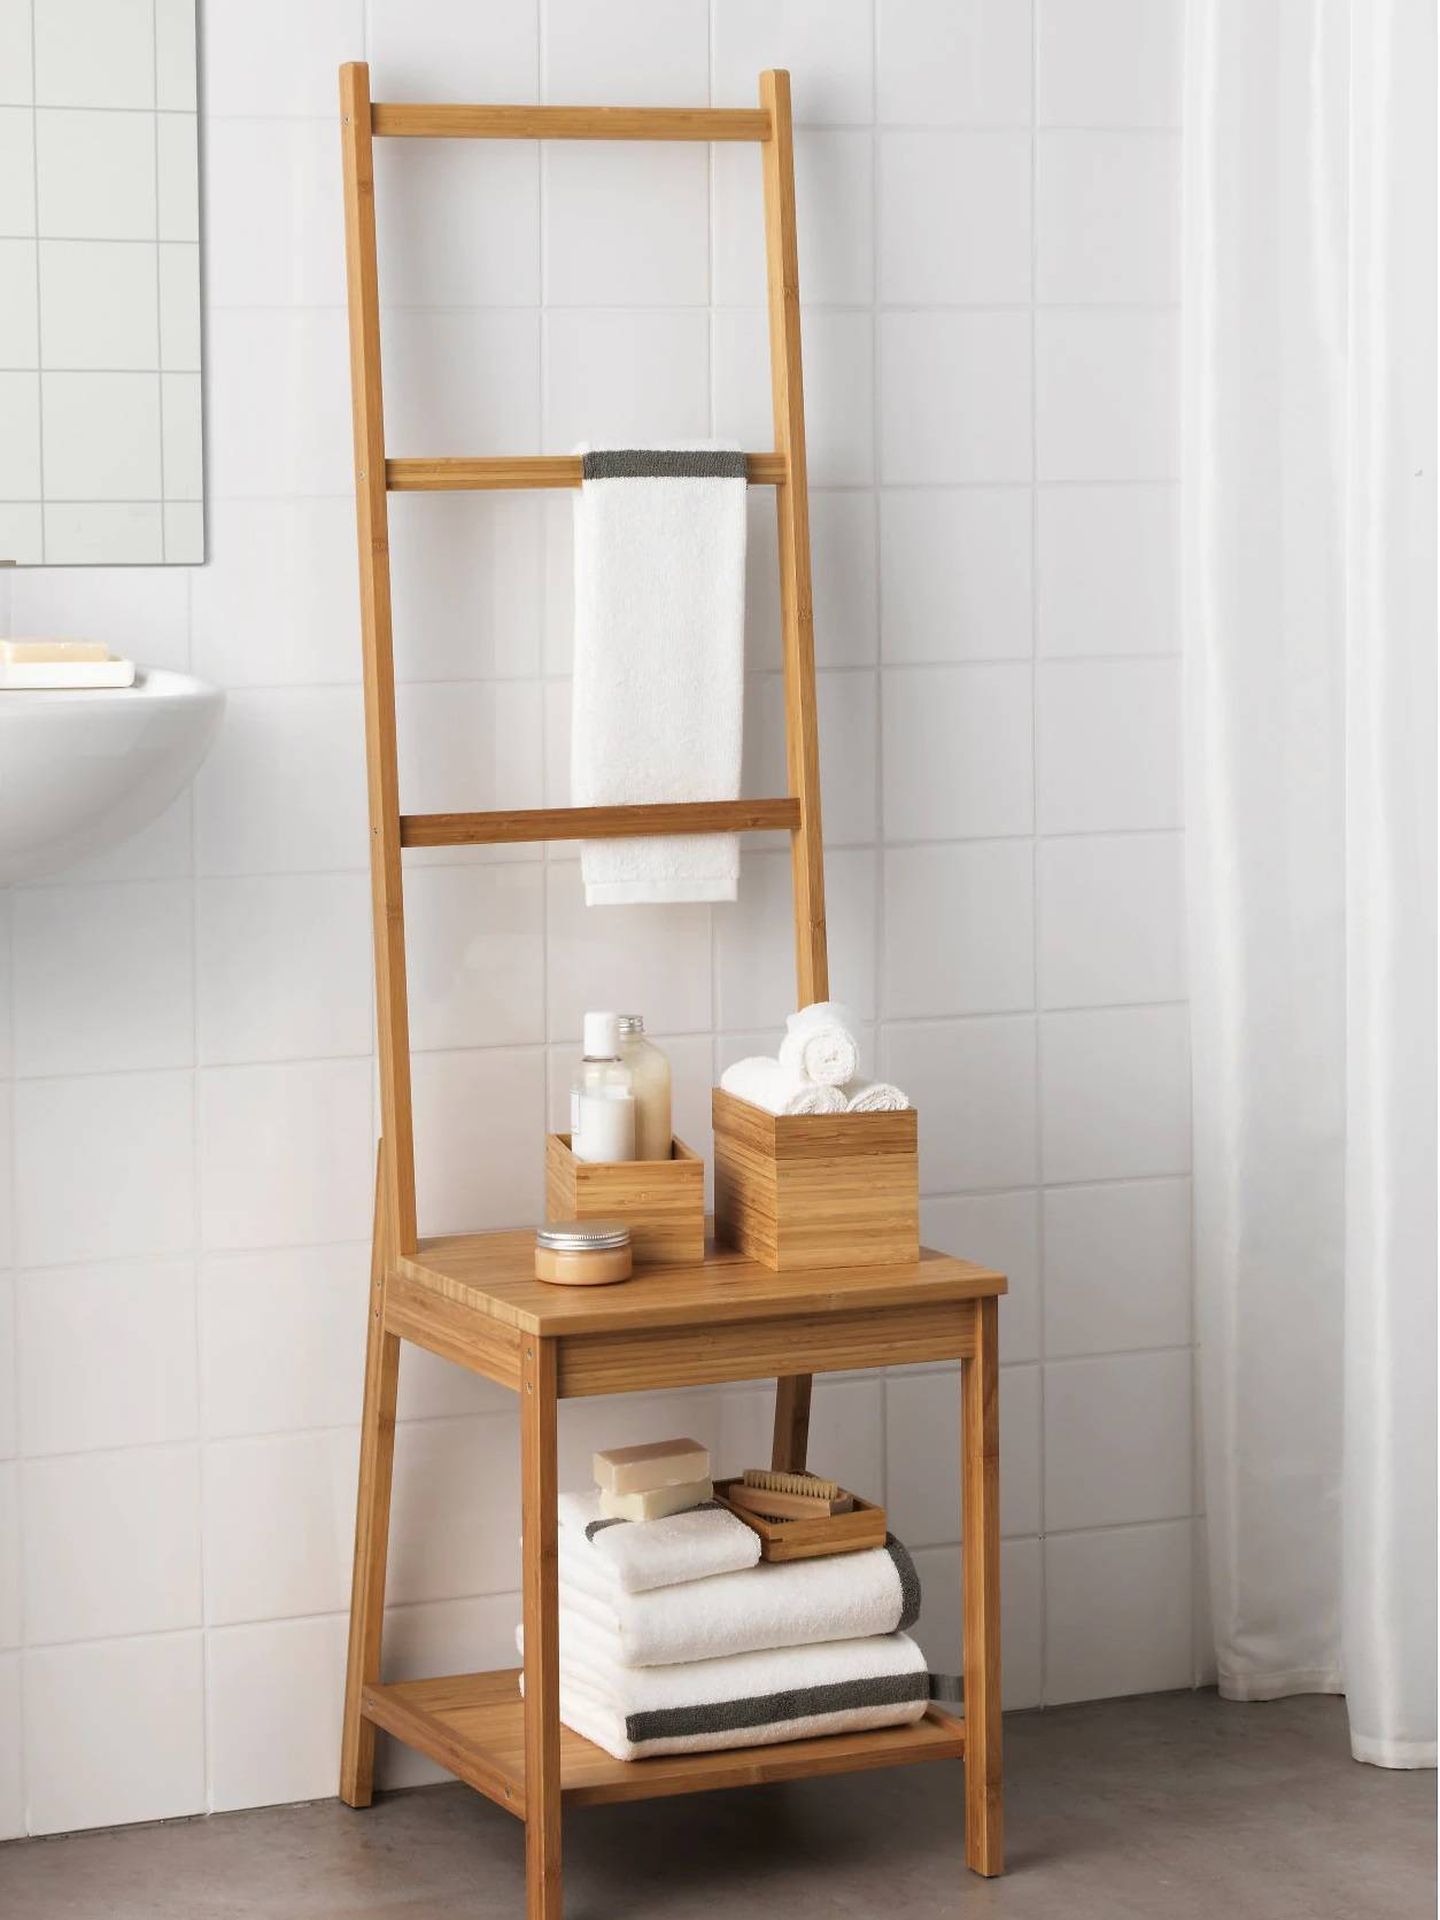 Convierte tu baño en un spa con este complemento de Ikea. (Cortesía)